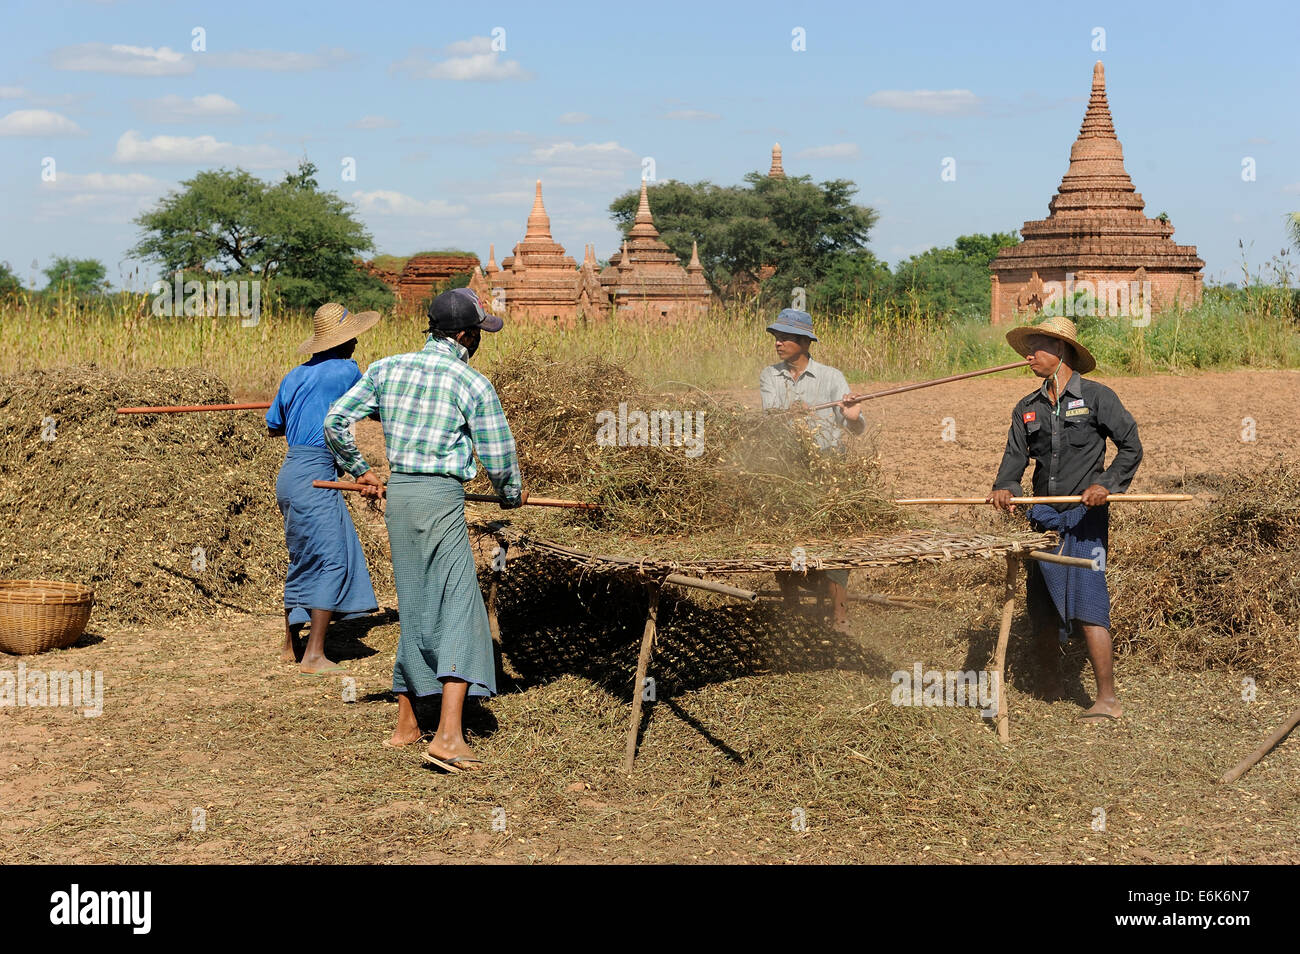 Popolo birmano thrashing arachidi da piante con bastoni, nel complesso archeologico con gli stupa, Bagan, Regione di Mandalay Foto Stock